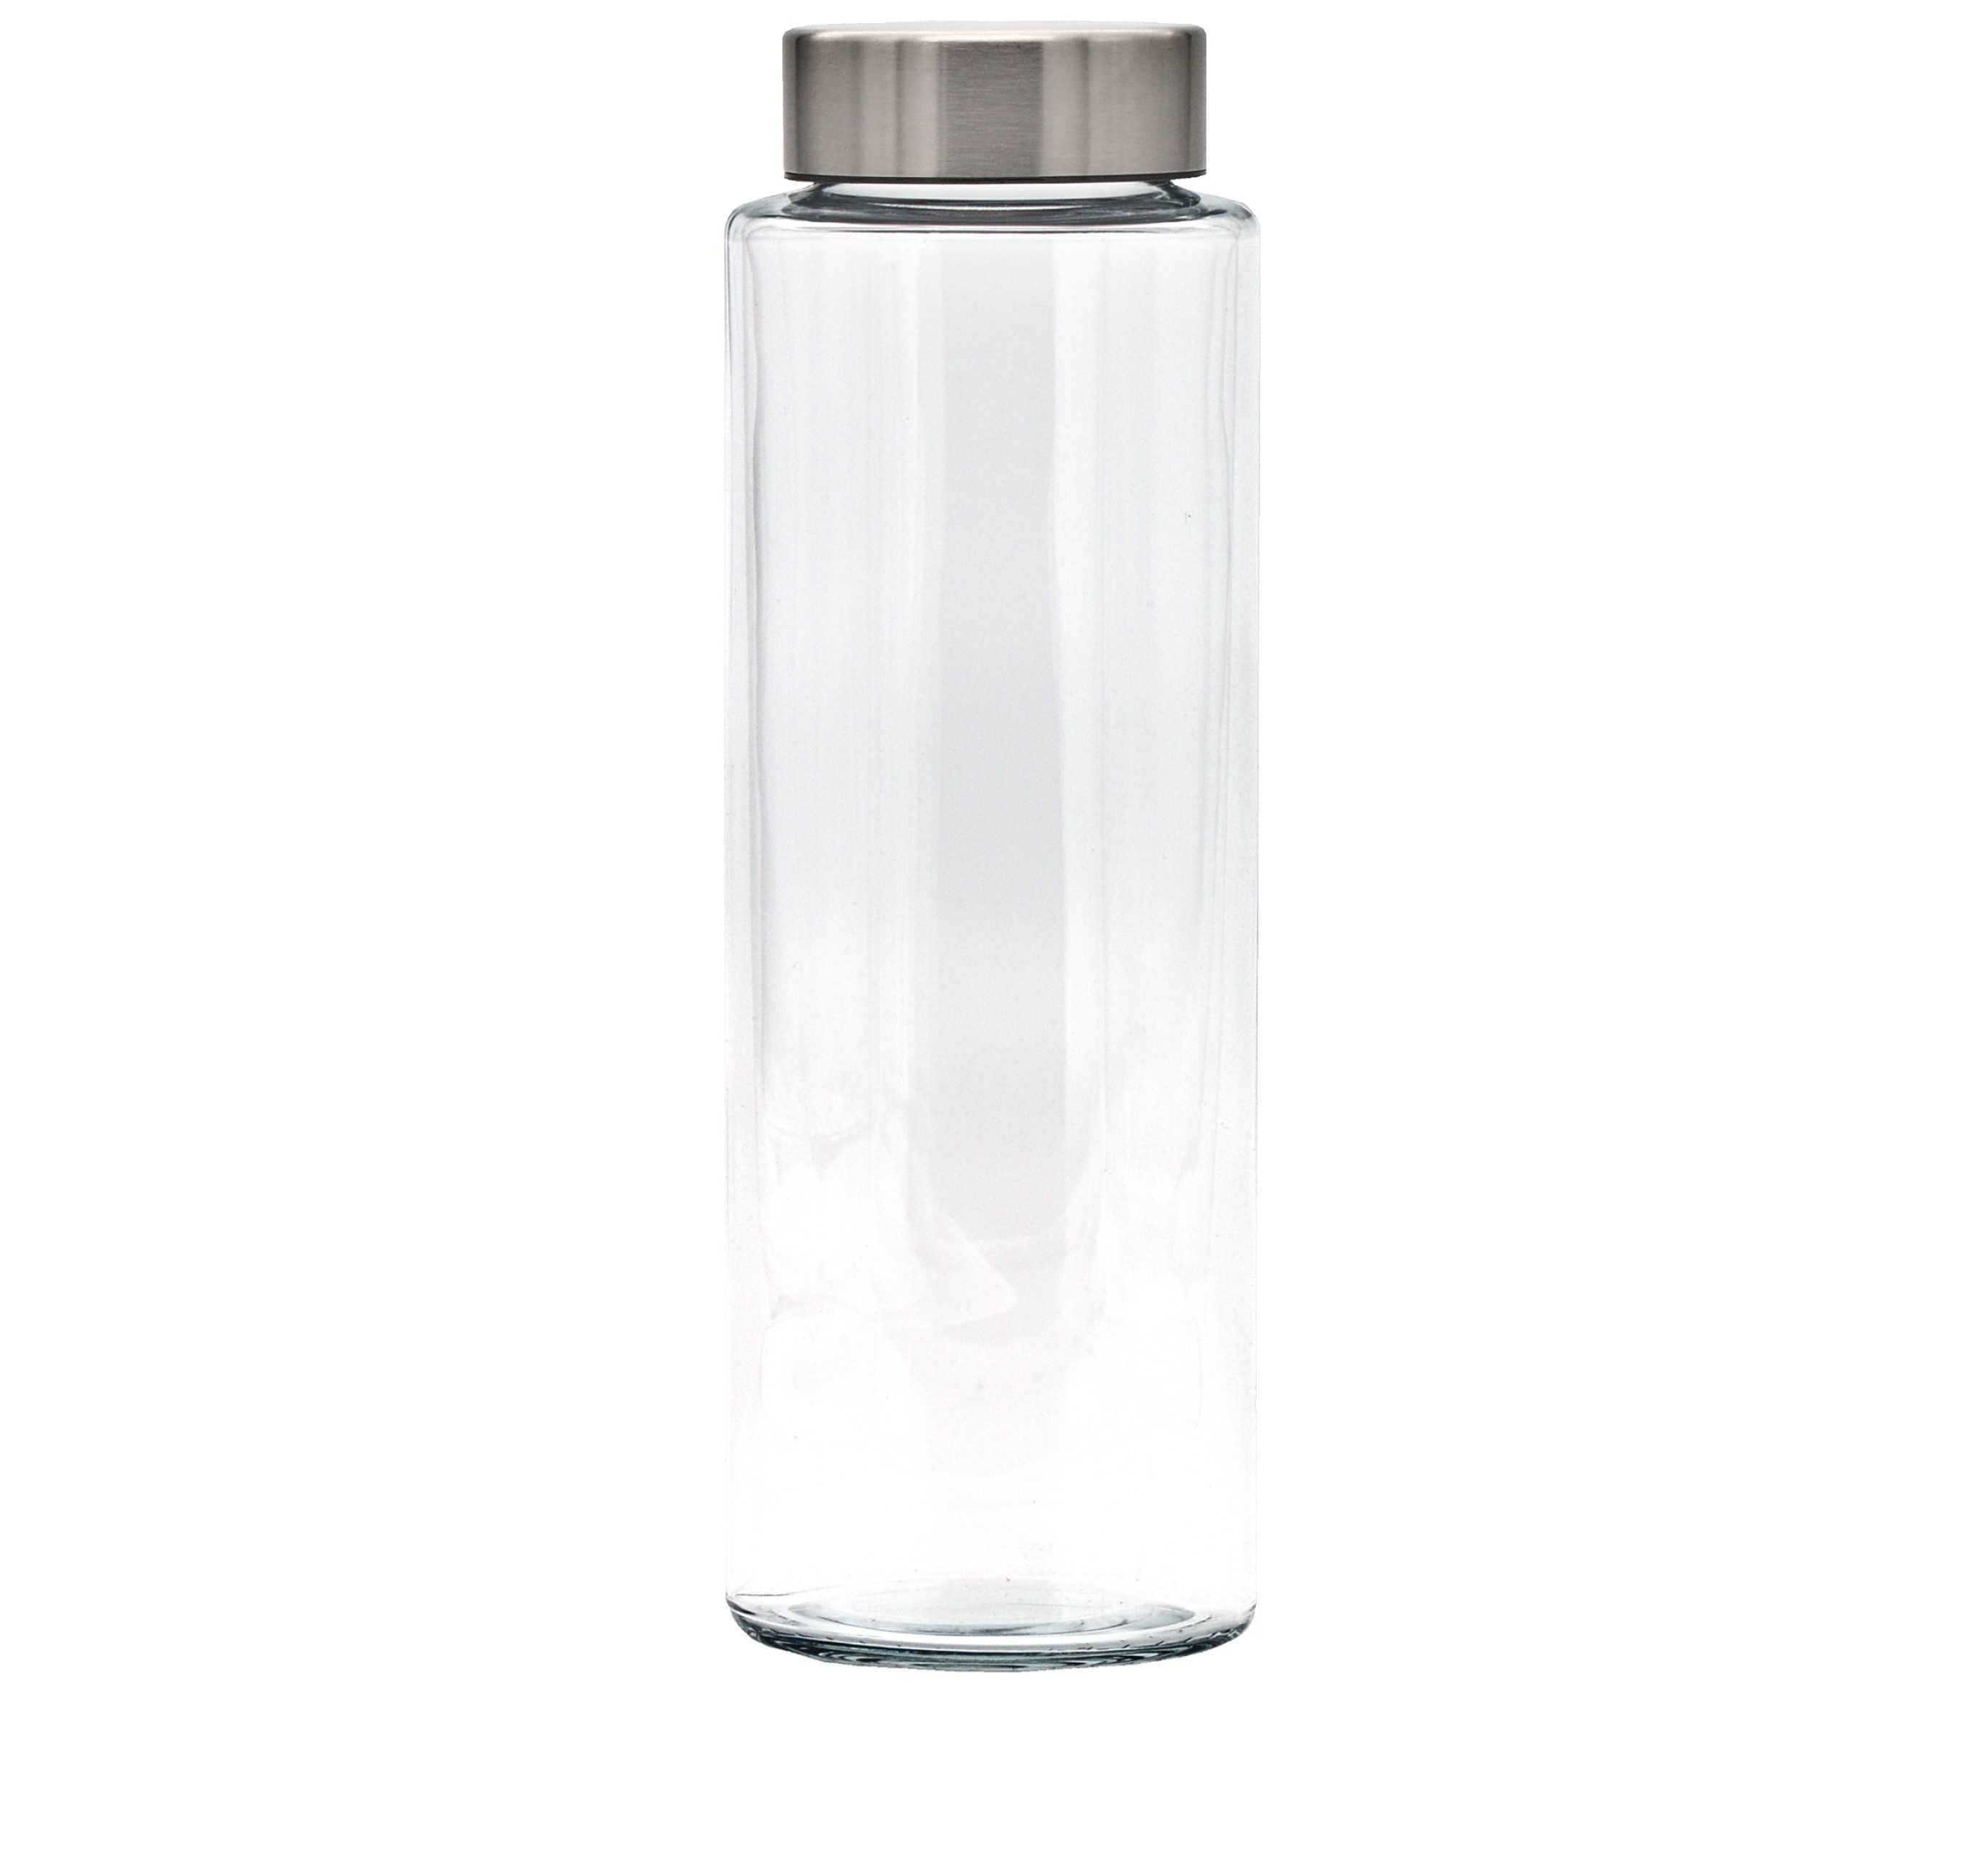 Exklusive SIMAX Trinkflasche aus Borosilikatglas in einfachen zylindrischen Design ohne Siebeinsatz und einer Füllmenge von 1000 ml